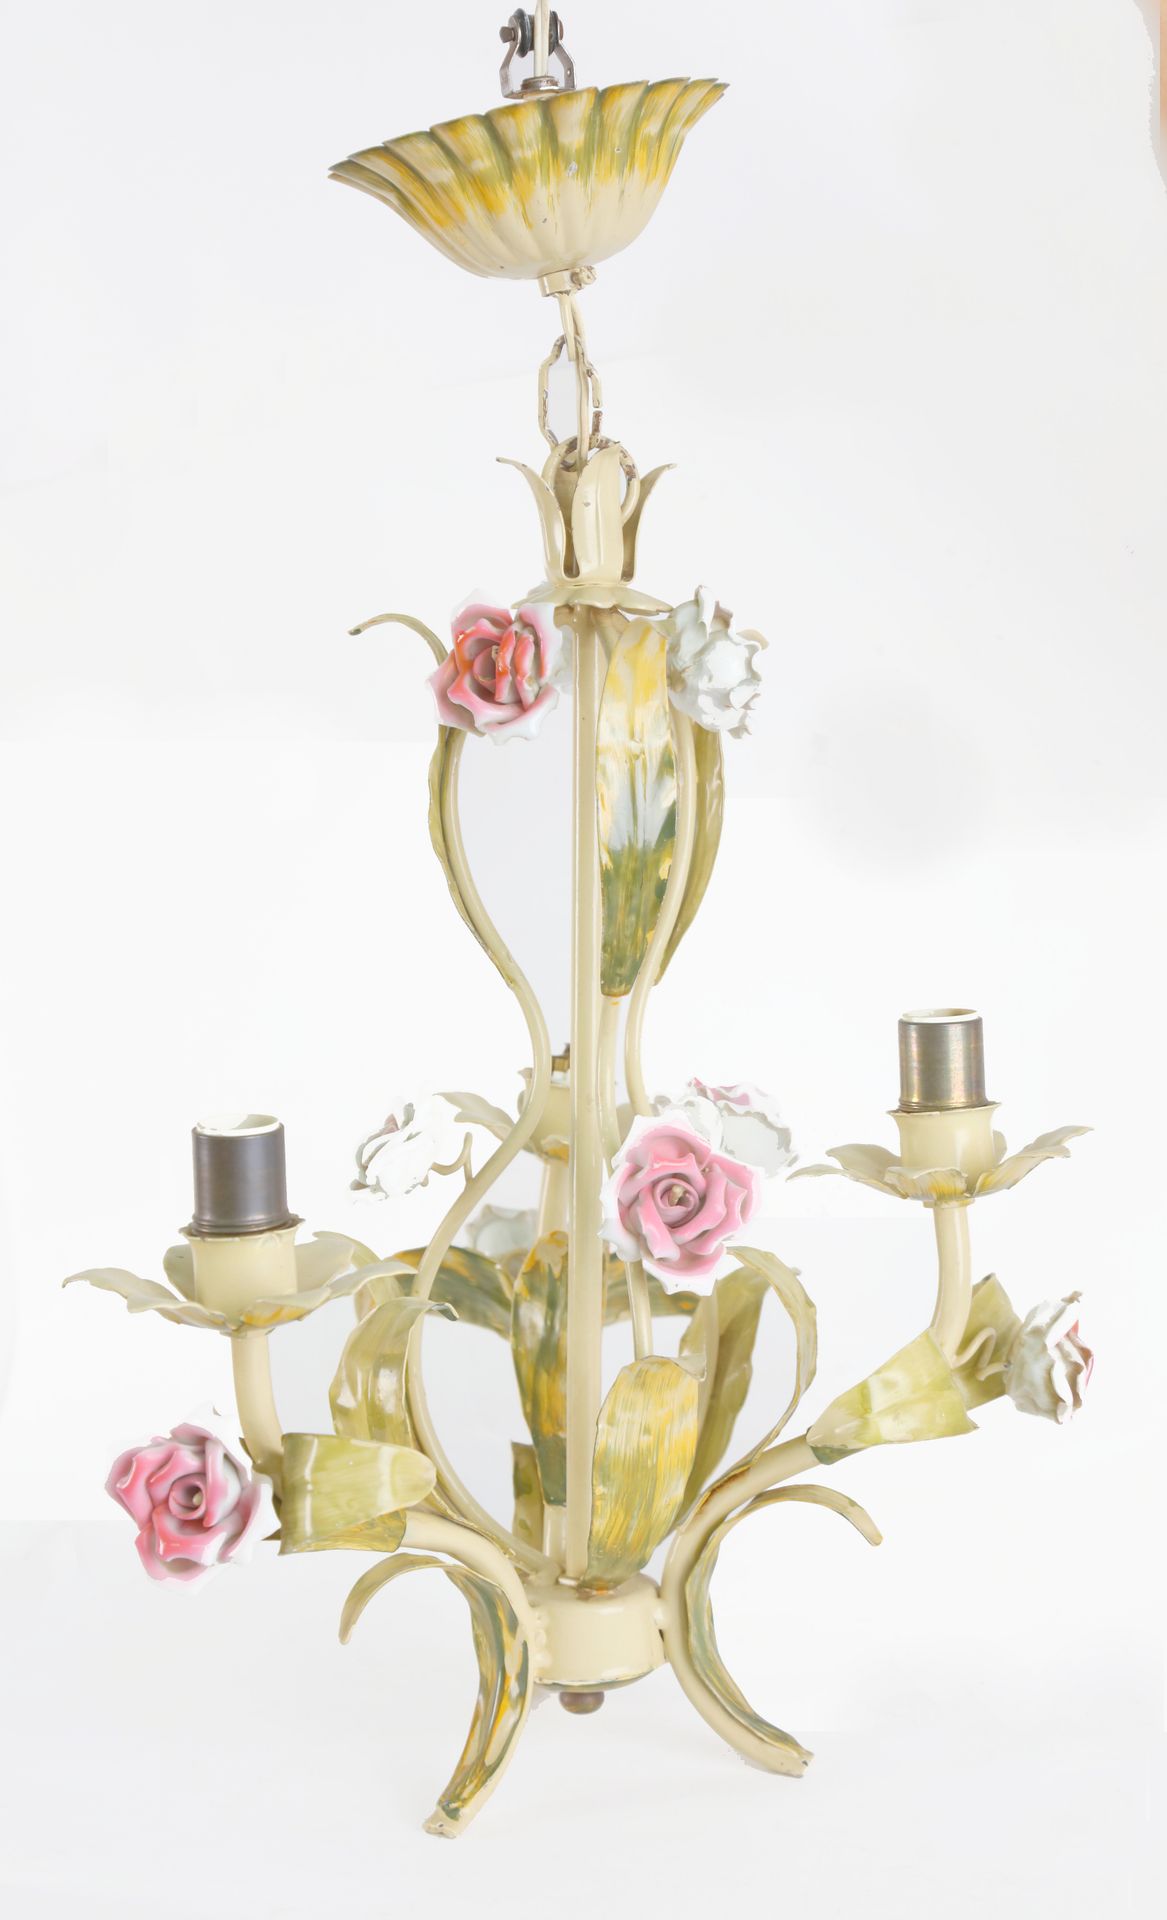 Null Araña con tres brazos de luz, metal y flores de porcelana, altura: 52 cm.